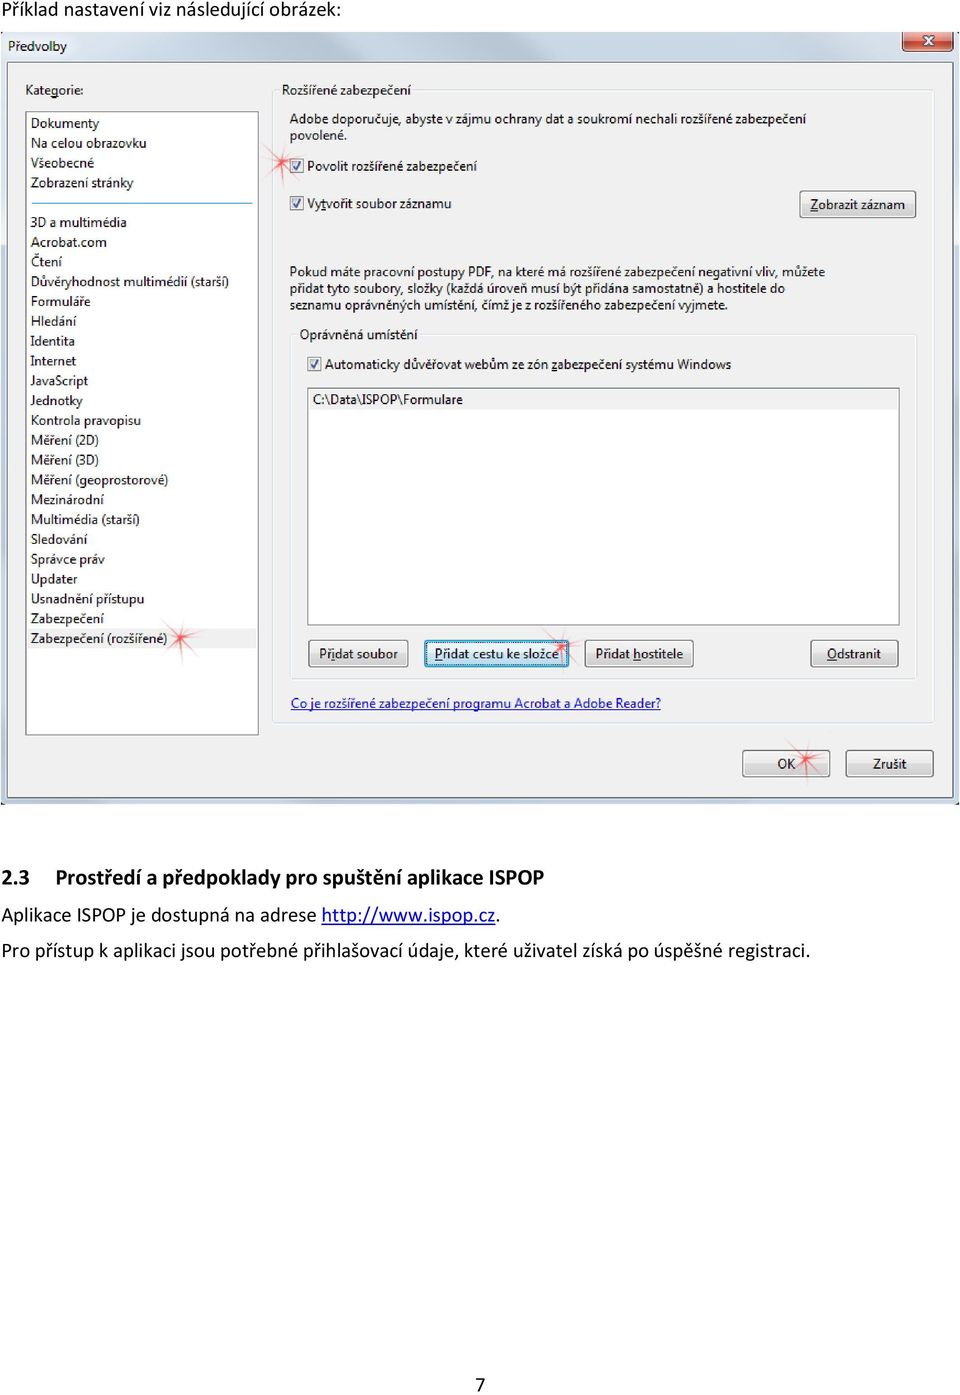 ISPOP je dostupná na adrese http://www.ispop.cz.